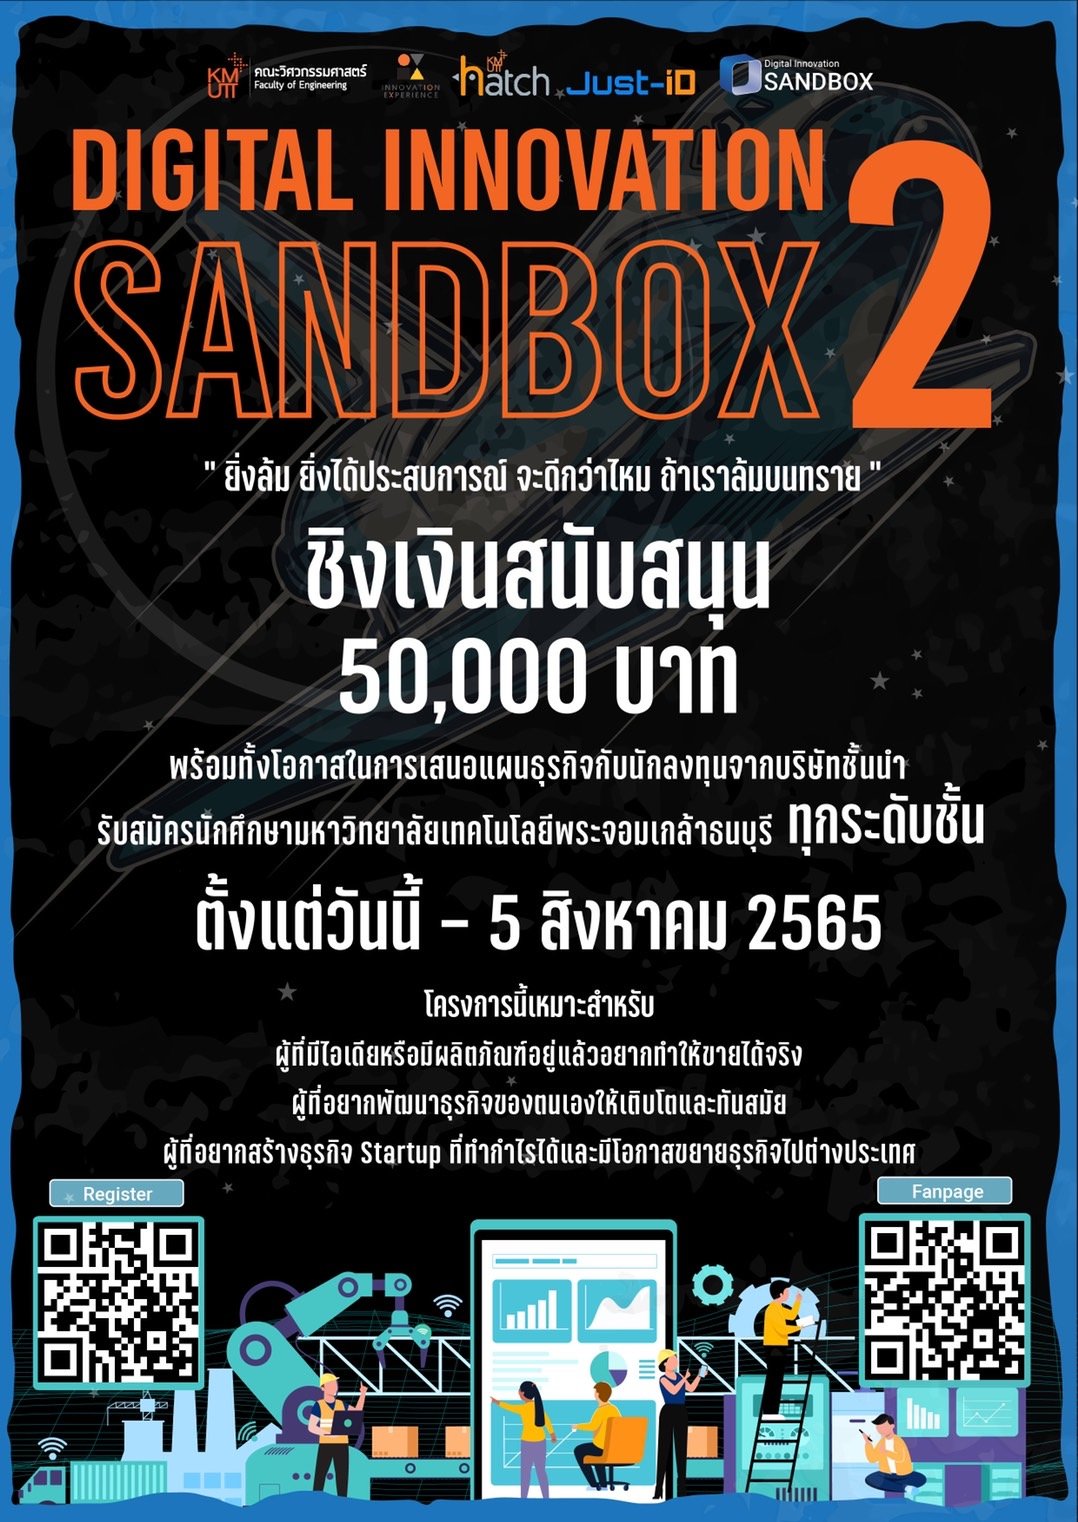 ขอเชิญชวนสมัครเข้าร่วมโครงการ Digital Innovation Sandbox ครั้งที่ 2